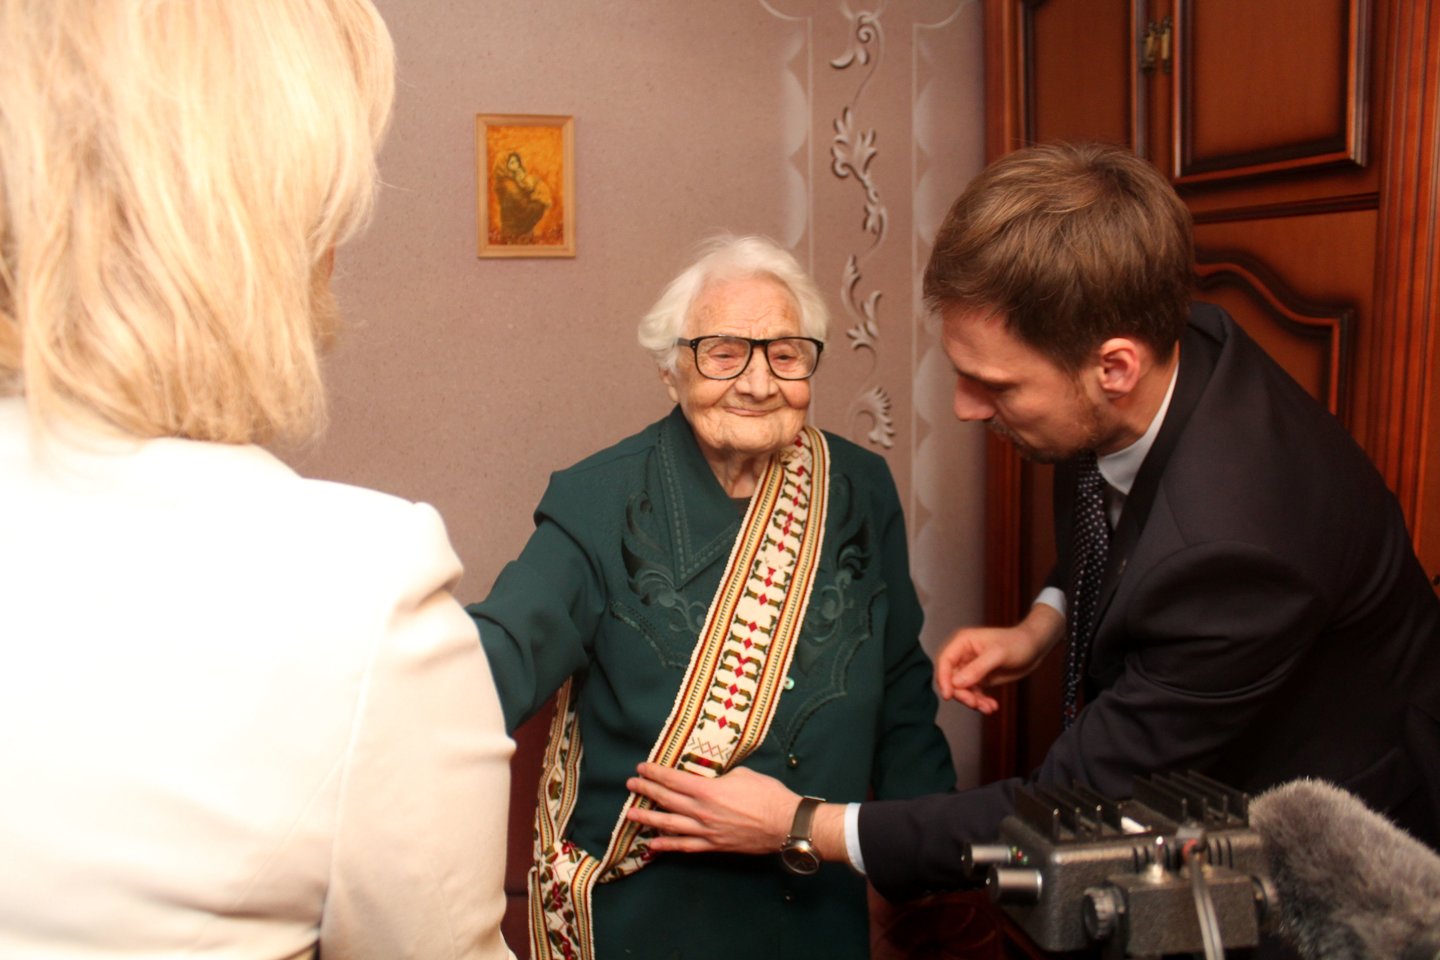  Šimto metų jubiliejų švenčianti J.Vitkauskienė svečius stebino savo energija ir optimizmu<br> R.Vitkaus nuotr.